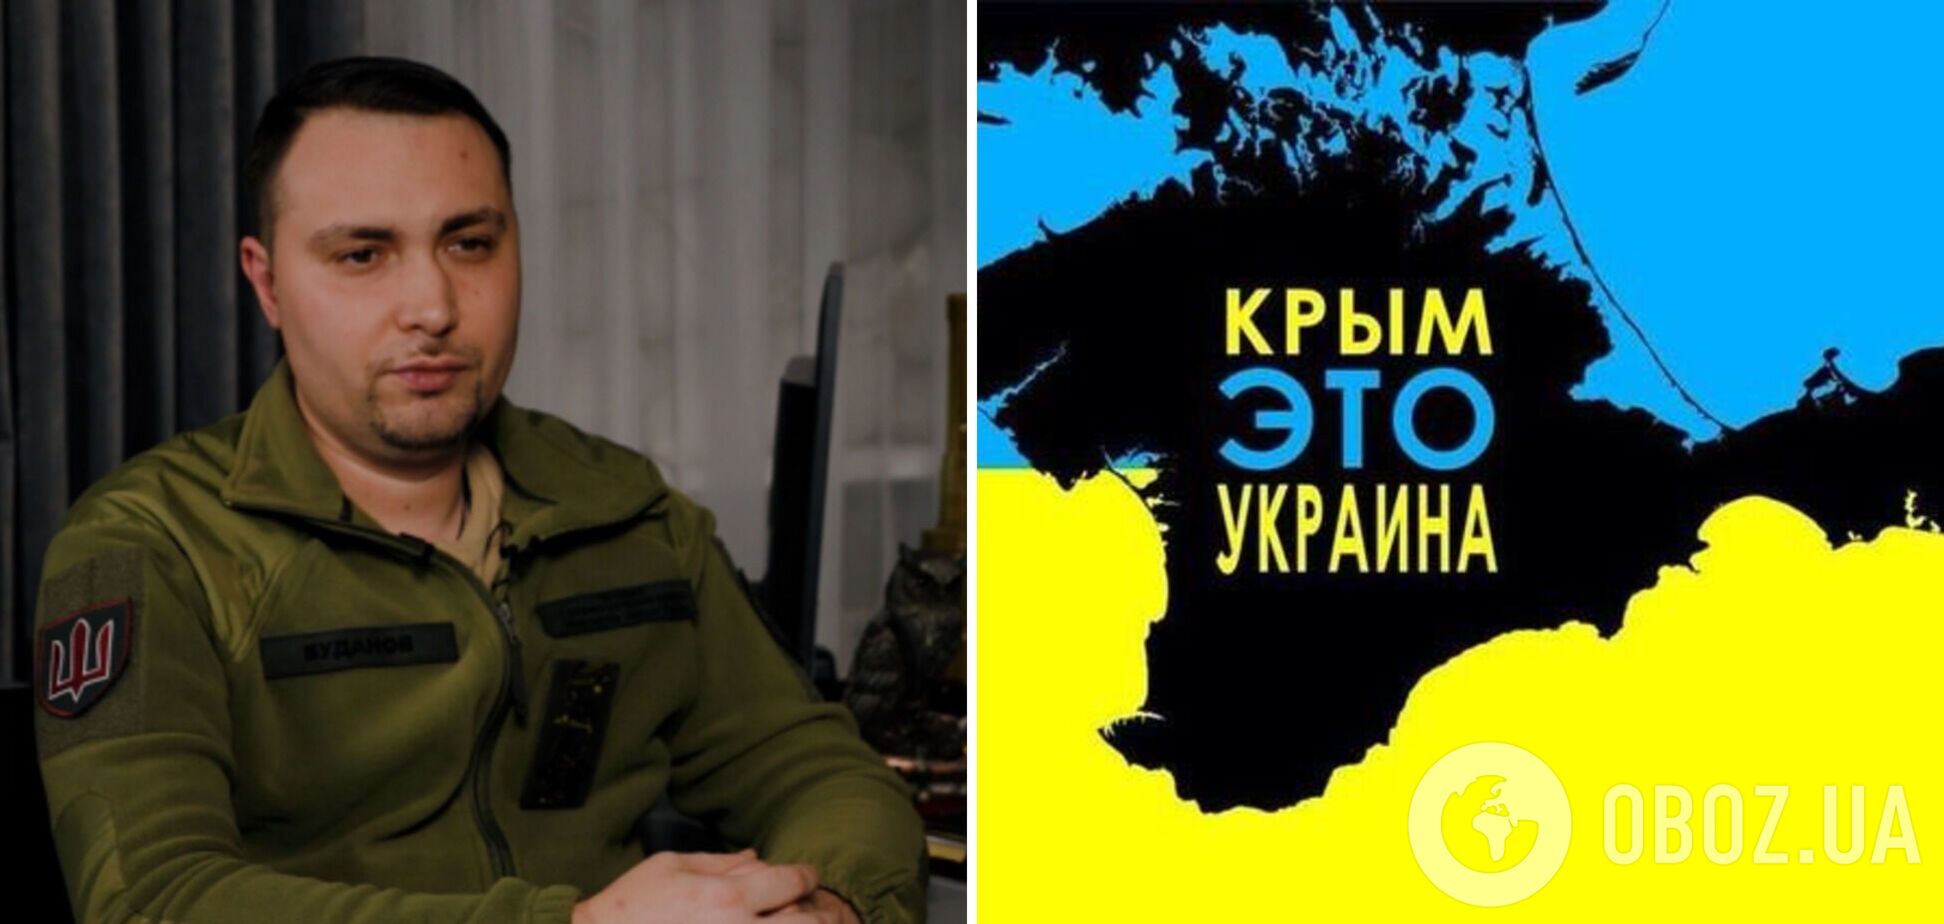 'Ми знайдемо кожного зрадника': в окупованому Криму на радіо прозвучало звернення Буданова щодо повернення півострова. Відео